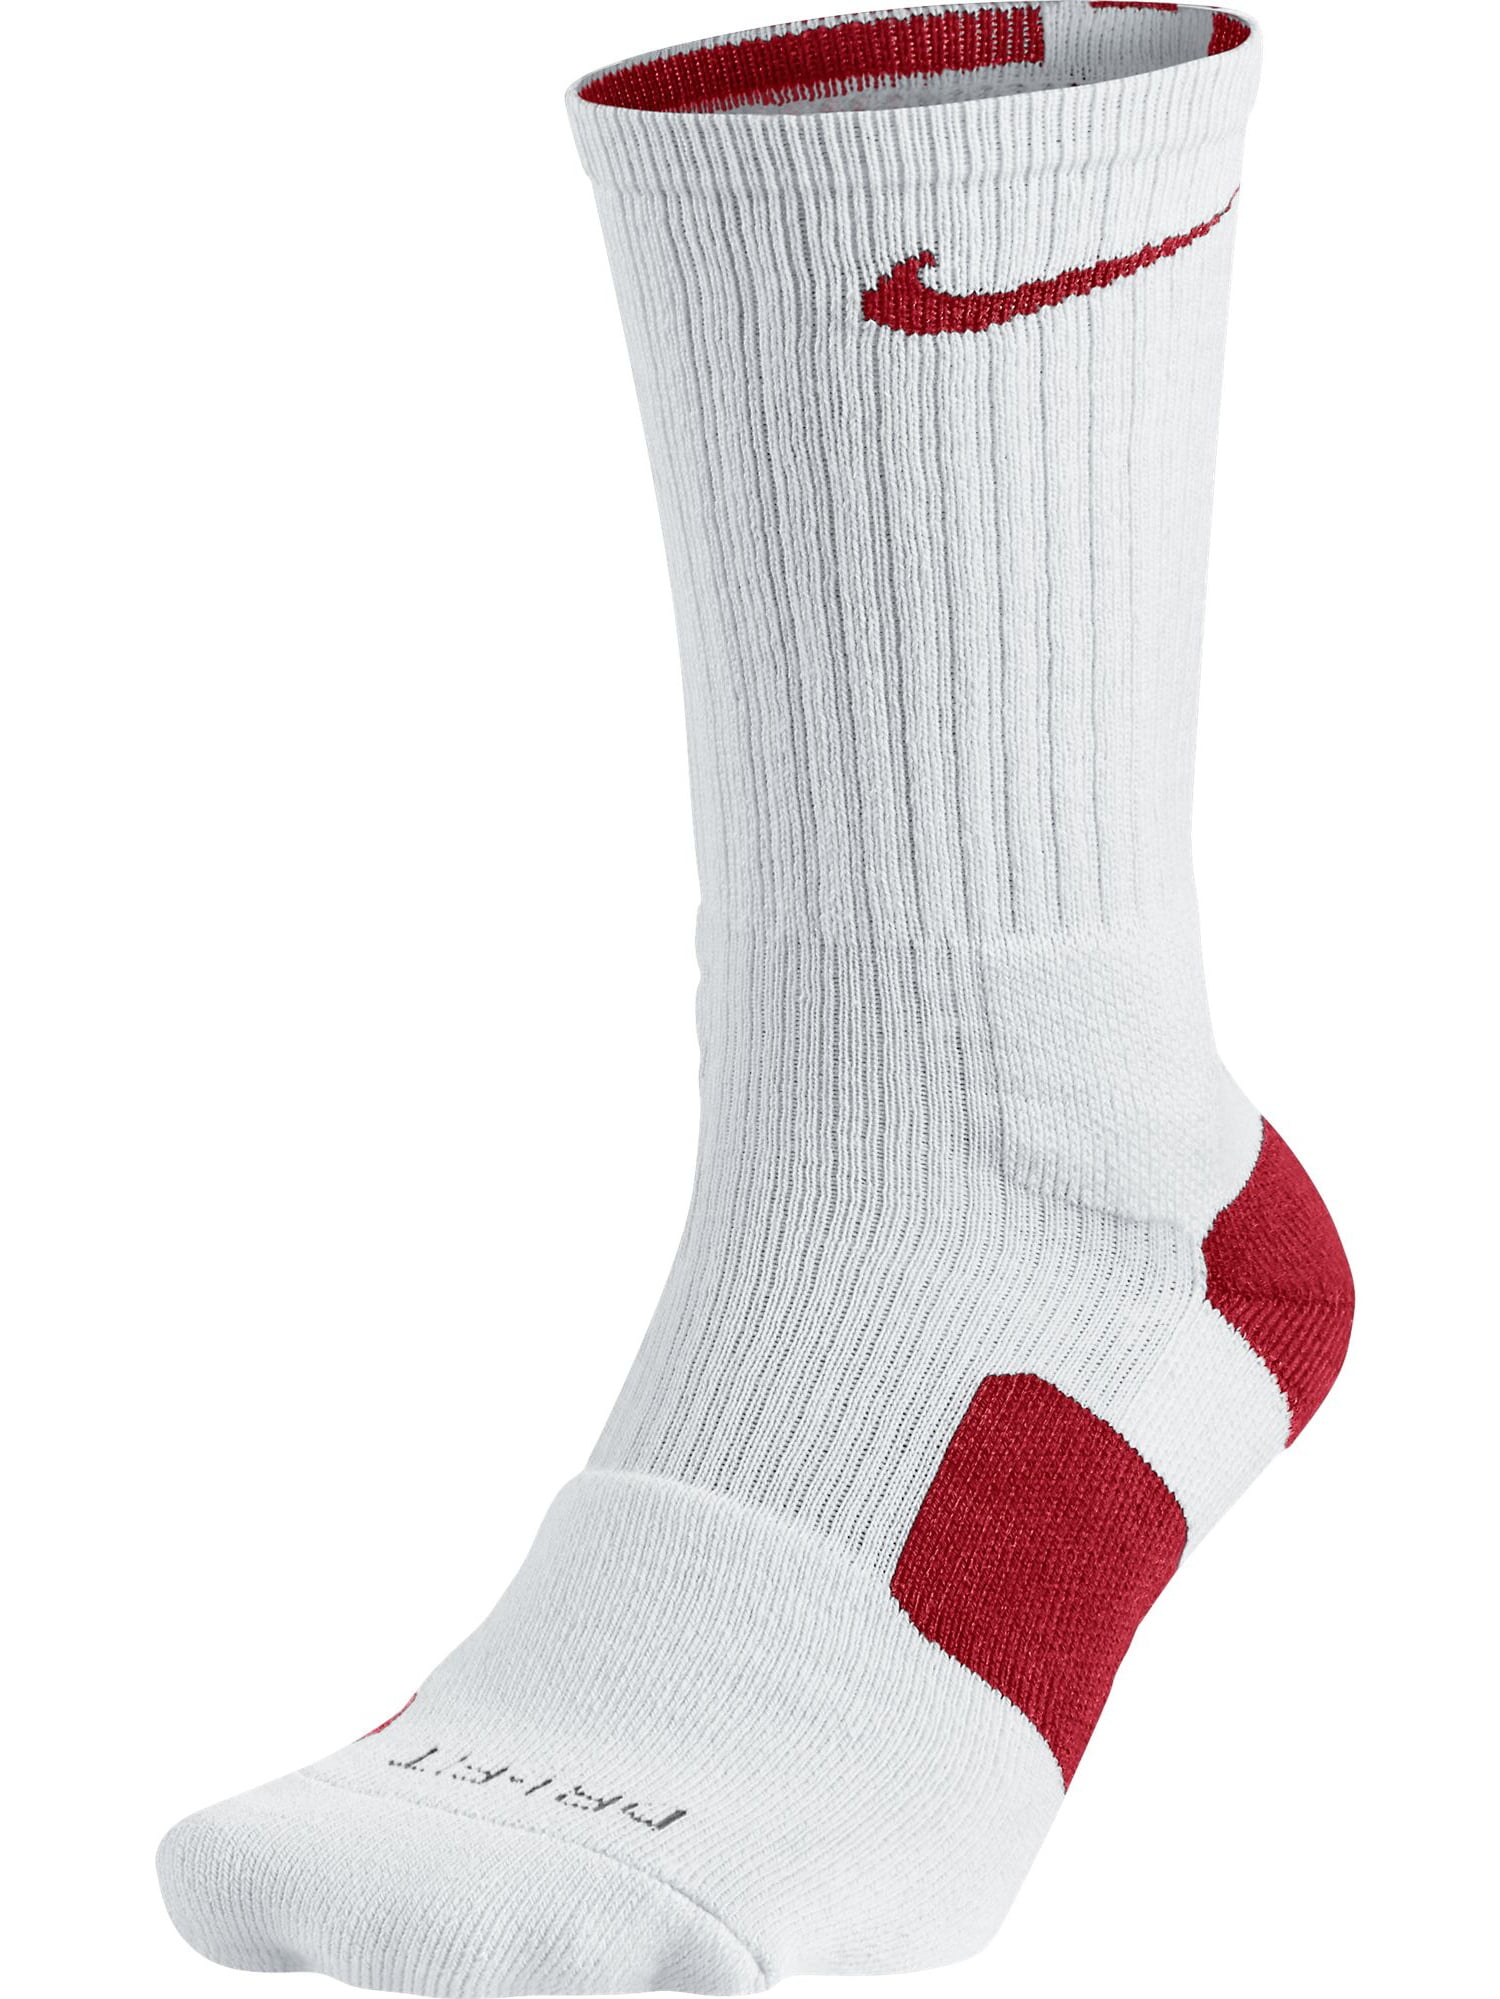 Nike Elite Dri-Fit Basketball Men's Crew Socks White/Varsity Red sx3629 nike elite socks red and black